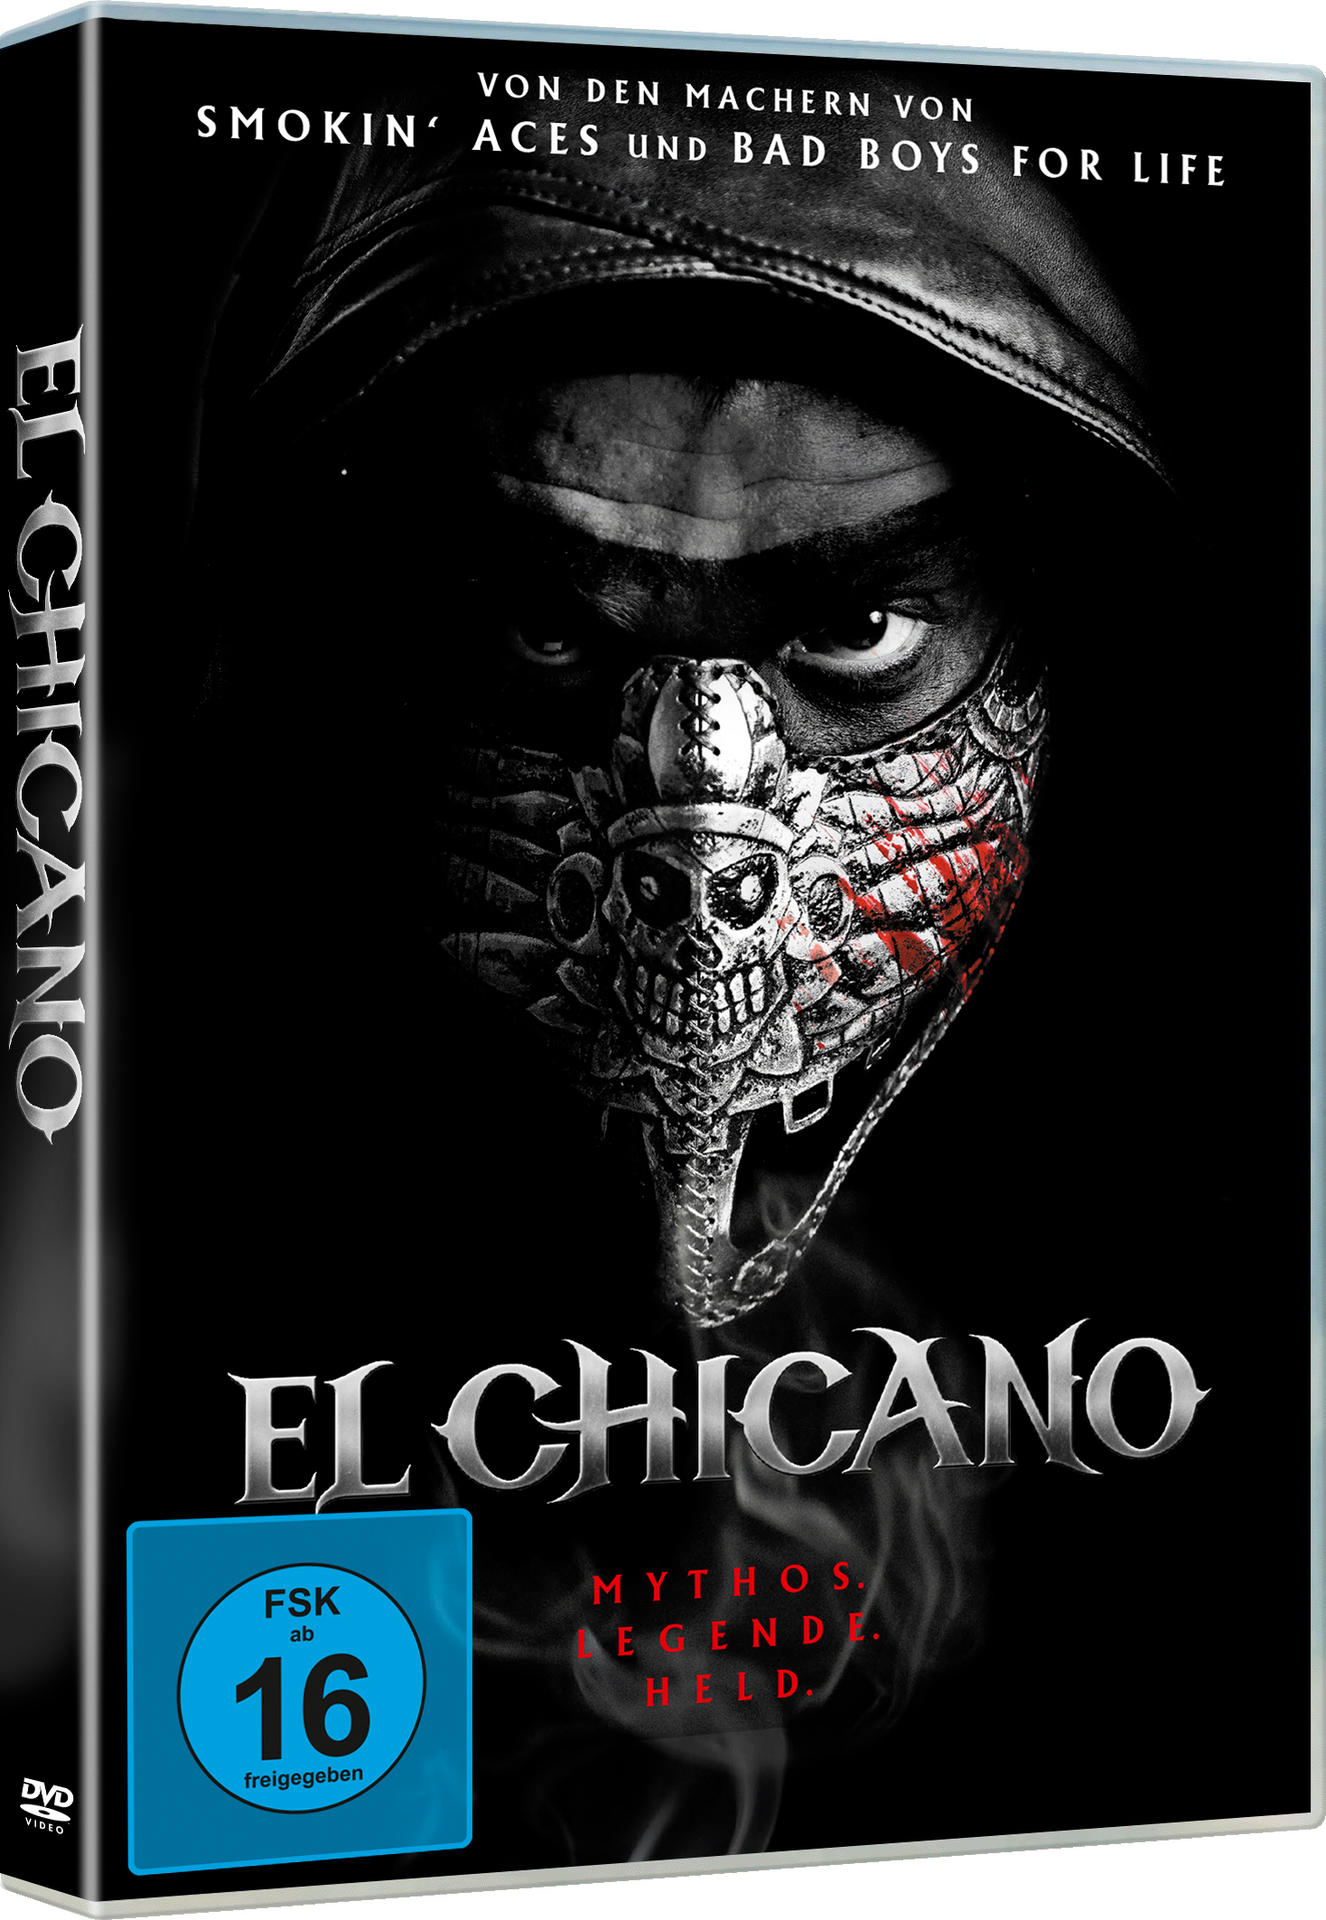 El Chicano DVD